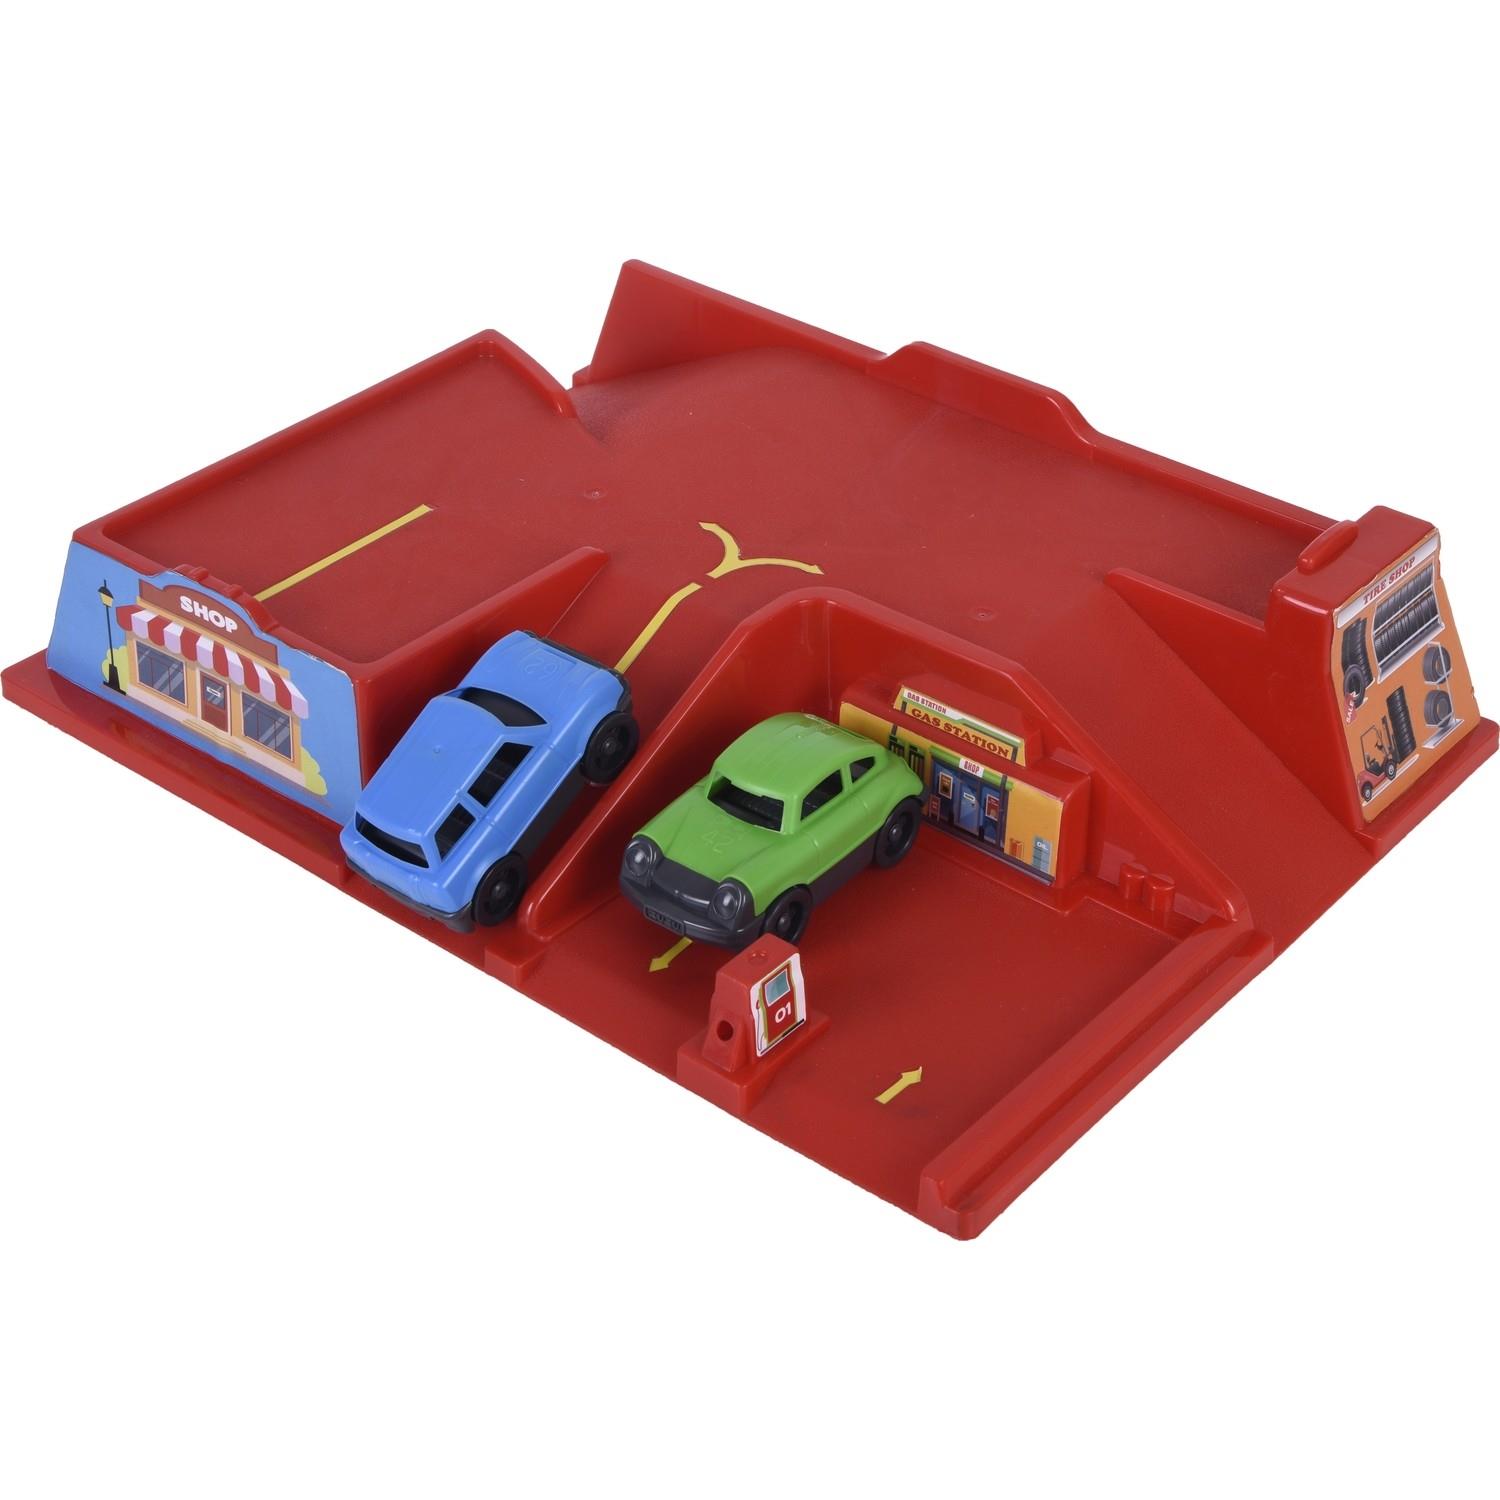 Zuzu Toys Kutulu Otopark Seti 3+ Yaş Kırmızı